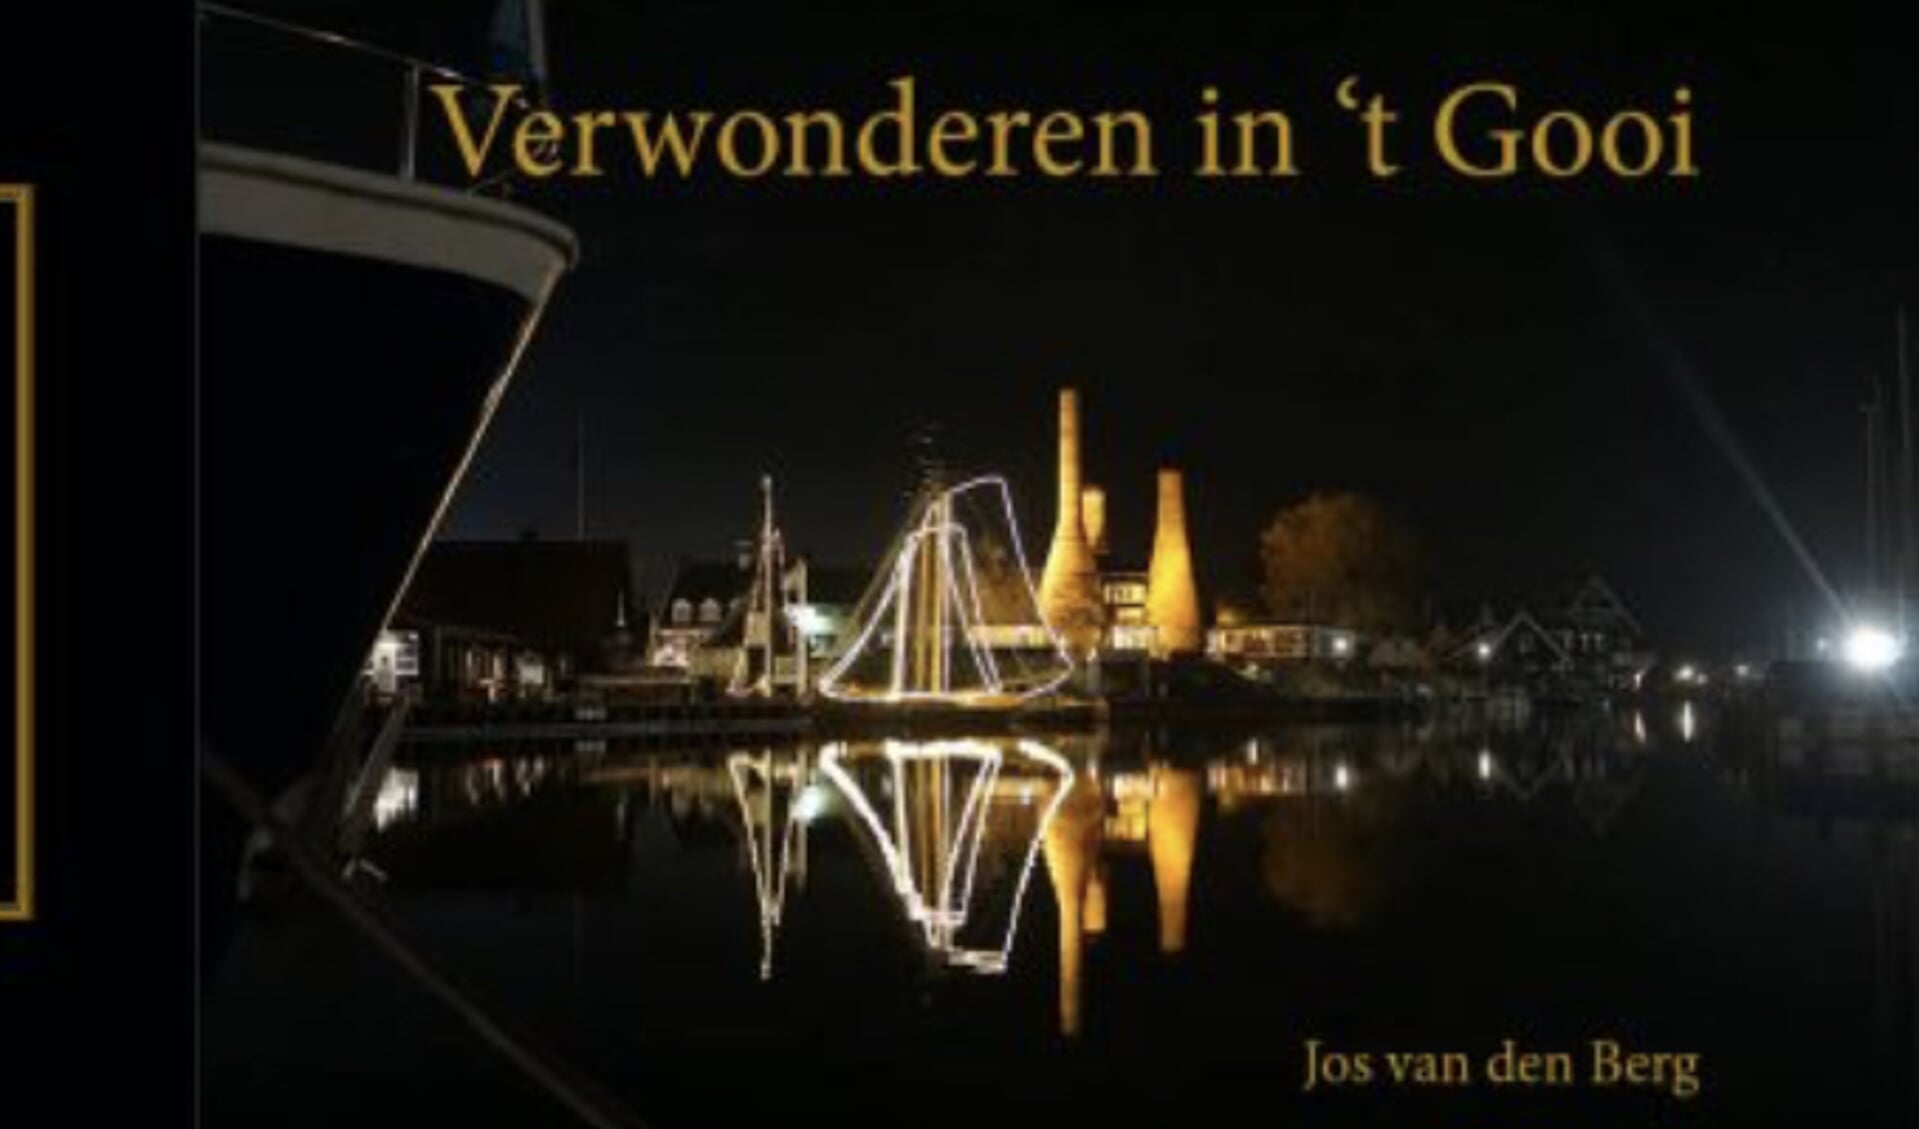 Omslag van het fotoboek van Jos van de Berg. Verwonderen in ‘t Gooi